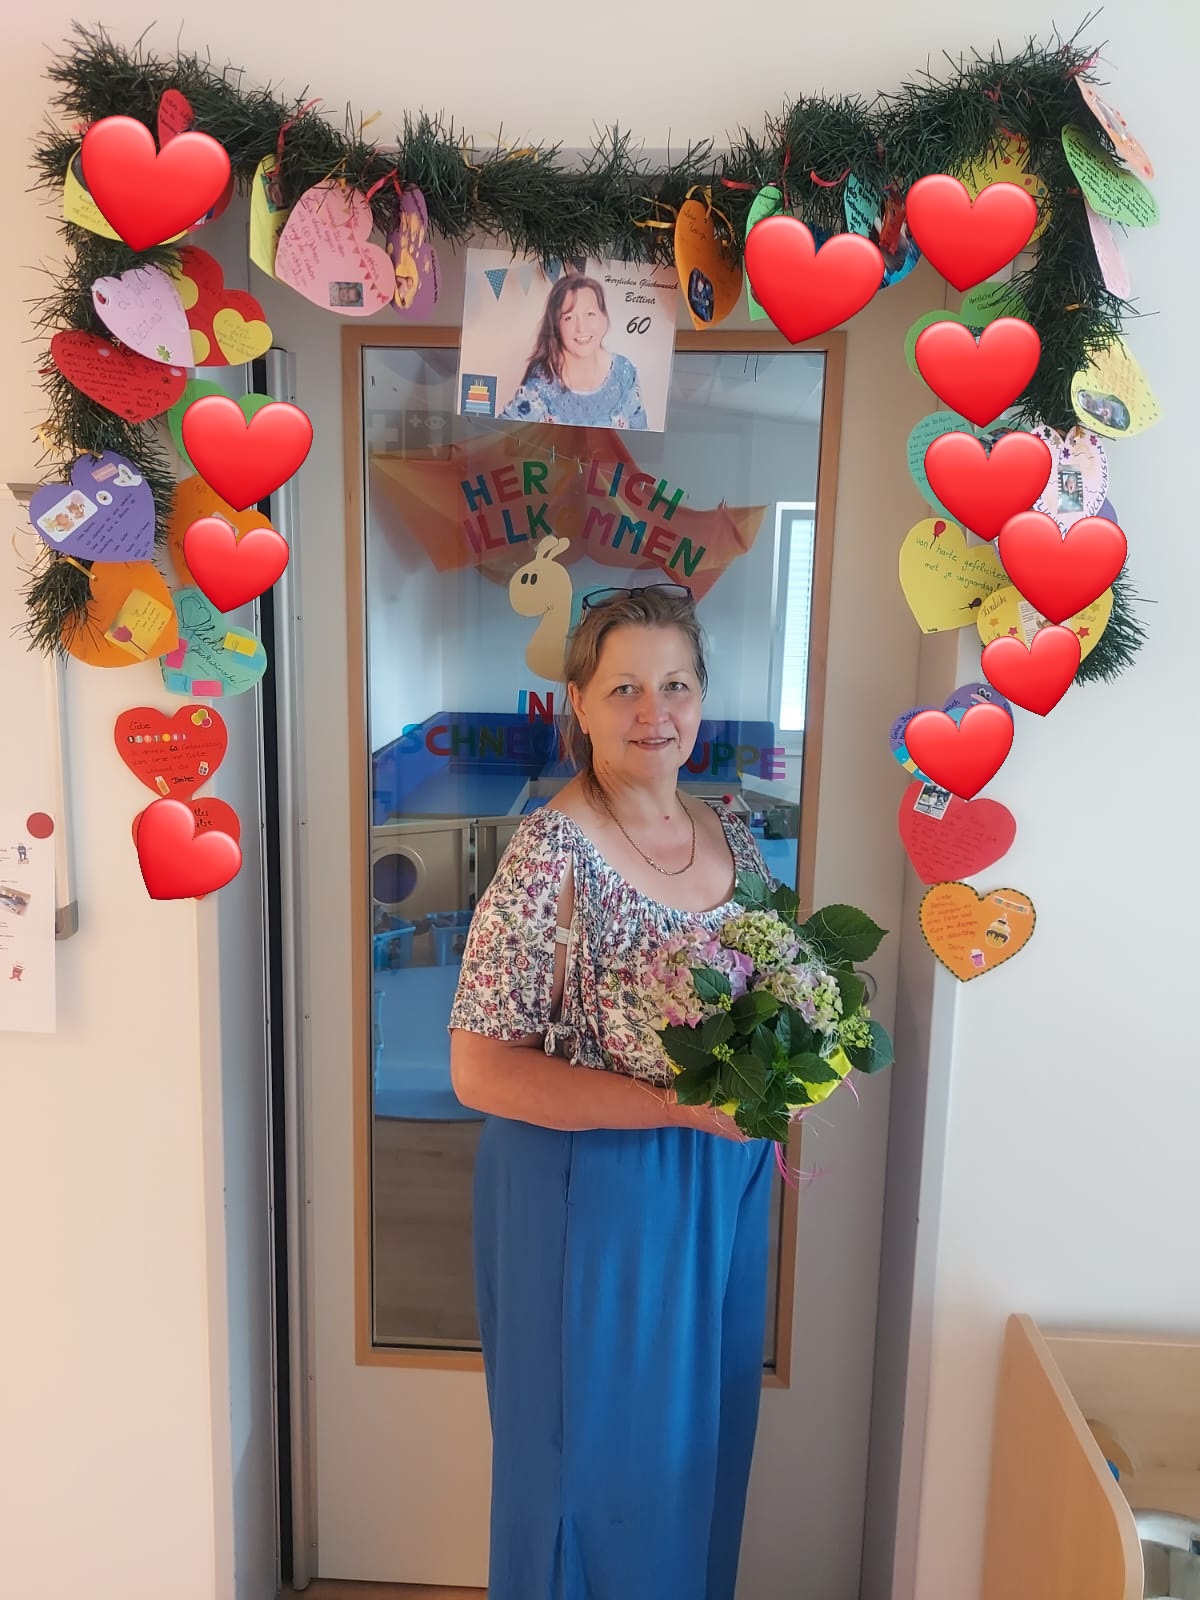 Heute feiert unsere Kollegin Bettina ihren 60. Geburtstag. Die Kinder, die Eltern und das Team haben sie mit einem Geburtstagsbogen und Blumen überrascht. Auch unsere Auszubildende Jessica feiert heute ihren Geburtstag. Wir wünschen den beiden von Herzen alles Gute.